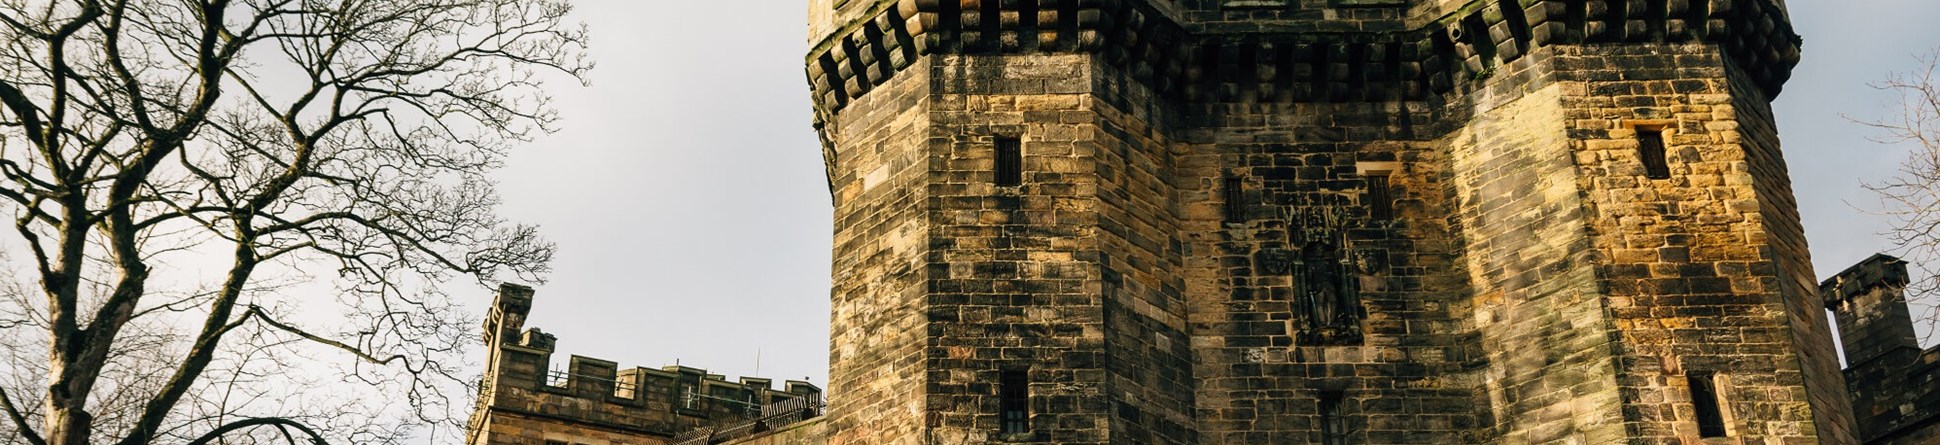 Rear view of Lancaster Castle